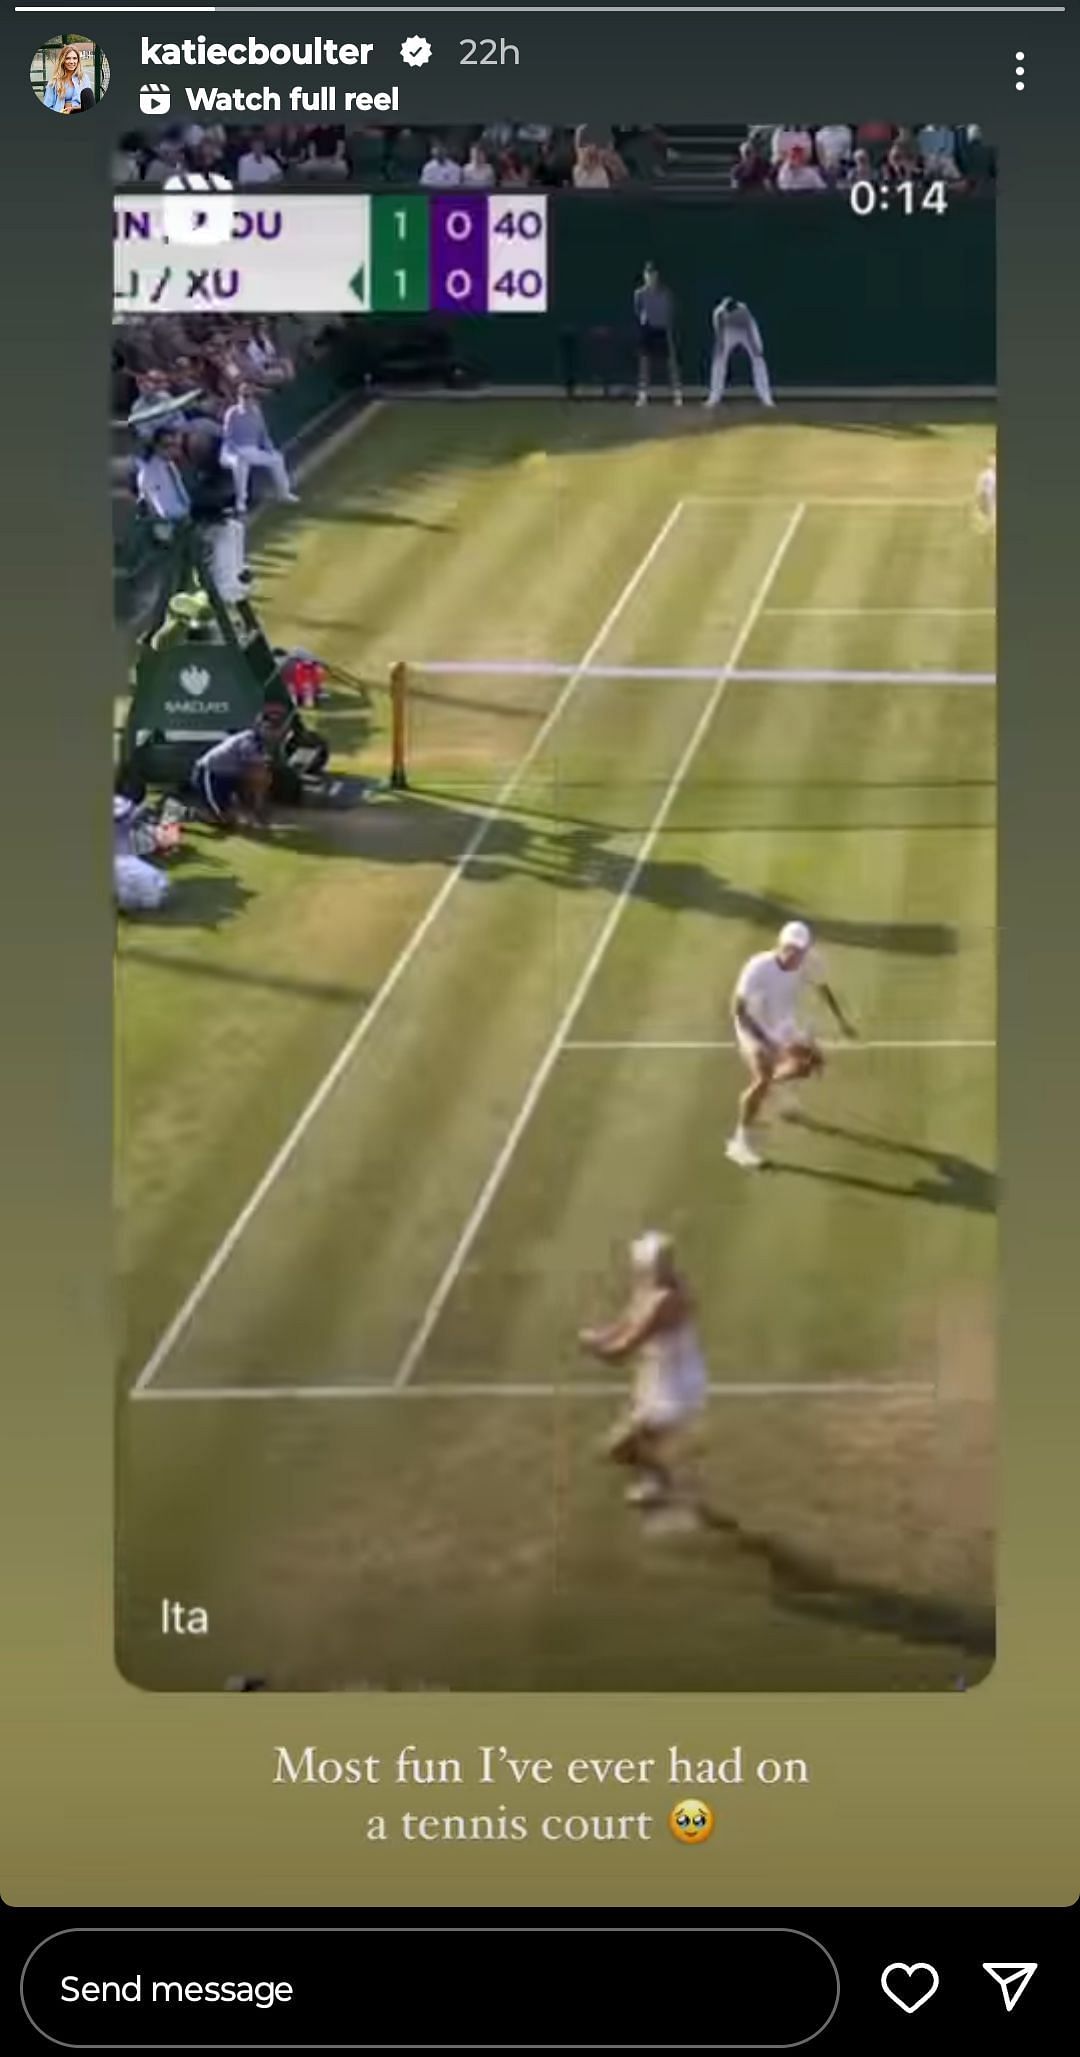 Katie Boulter remembers partnering with Alex De Minaur at Wimbledon